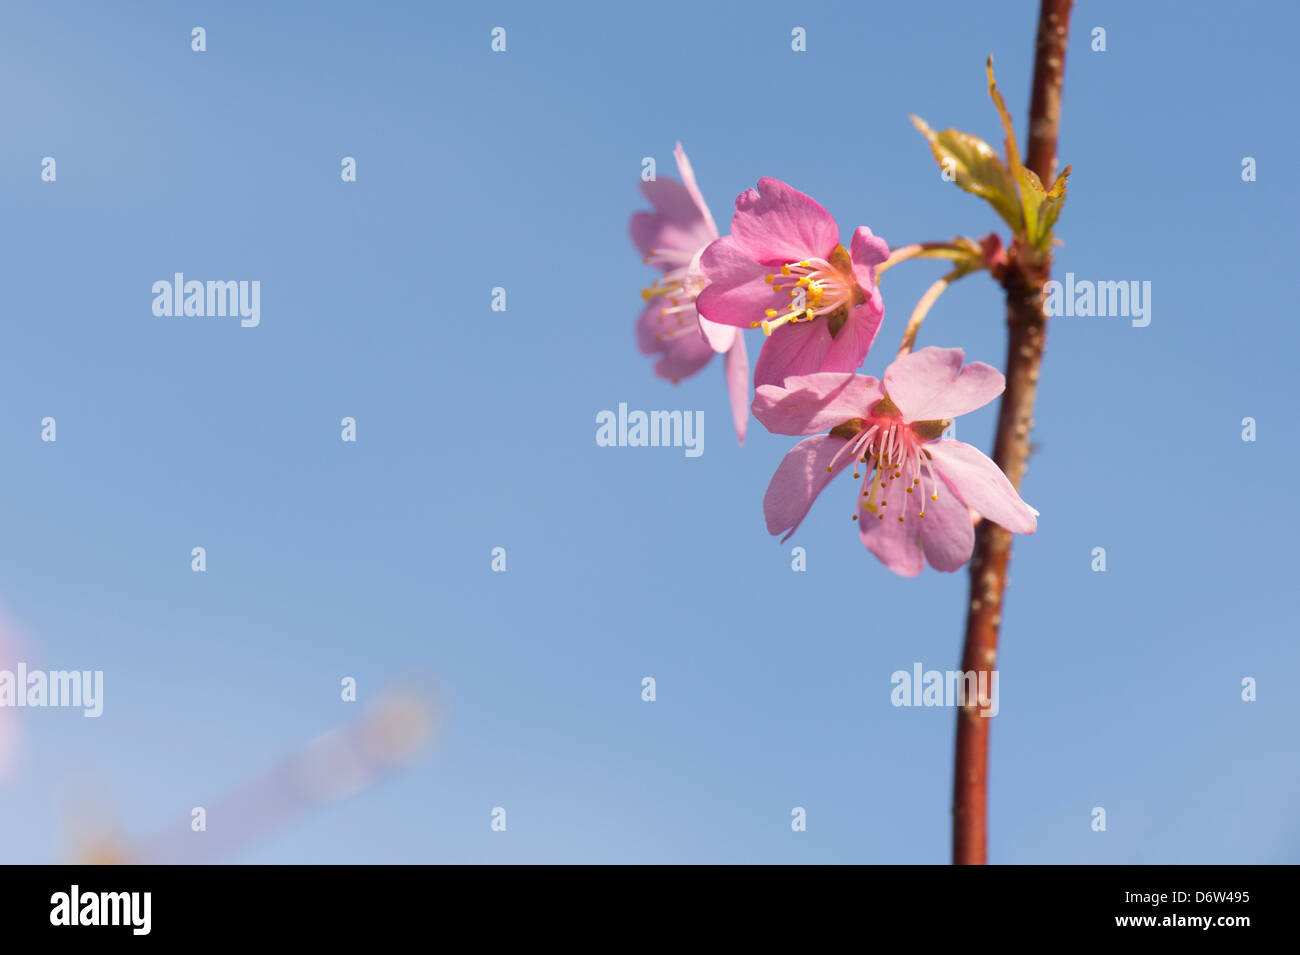 Prunus Avium Sweetheart.  Cherry tree blossom Stock Photo